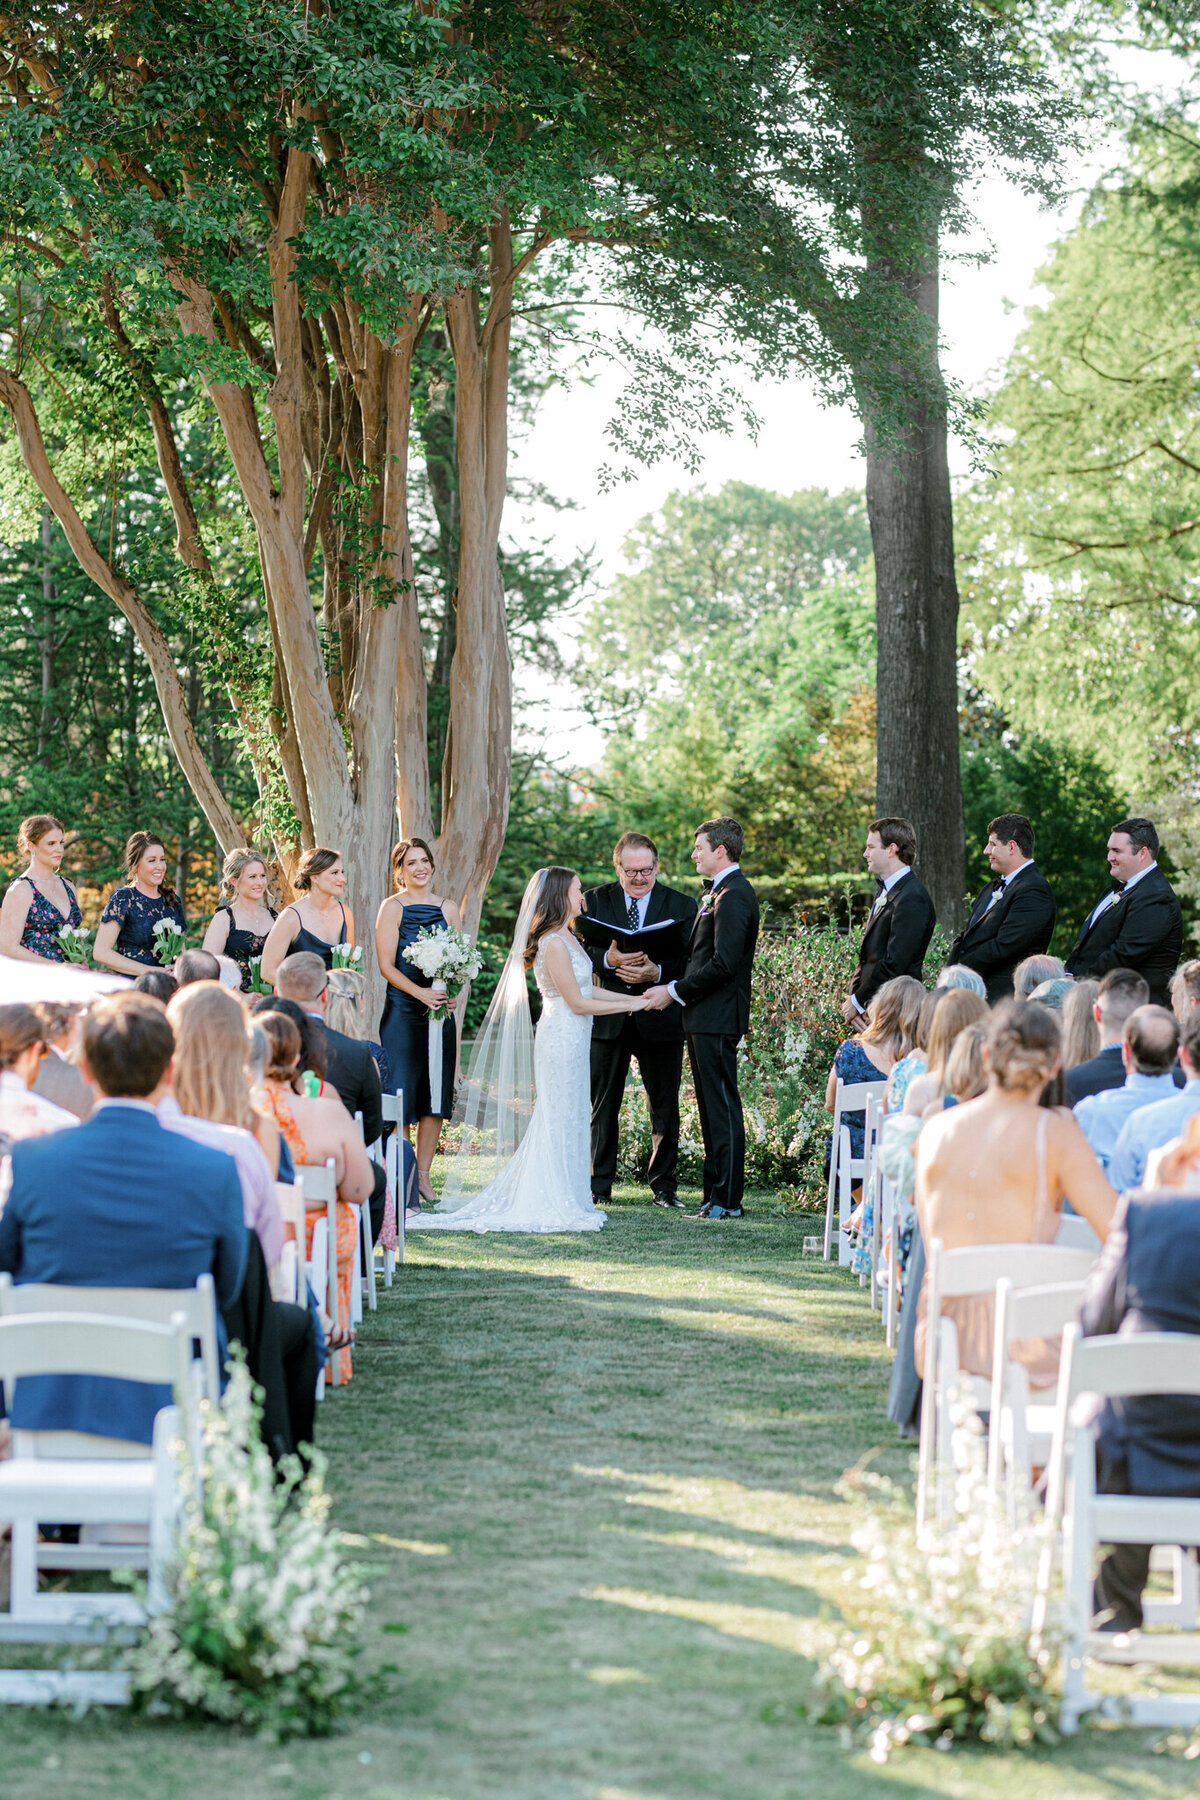 Gena & Matt's Wedding at the Dallas Arboretum | Dallas Wedding Photographer | Sami Kathryn Photography-144